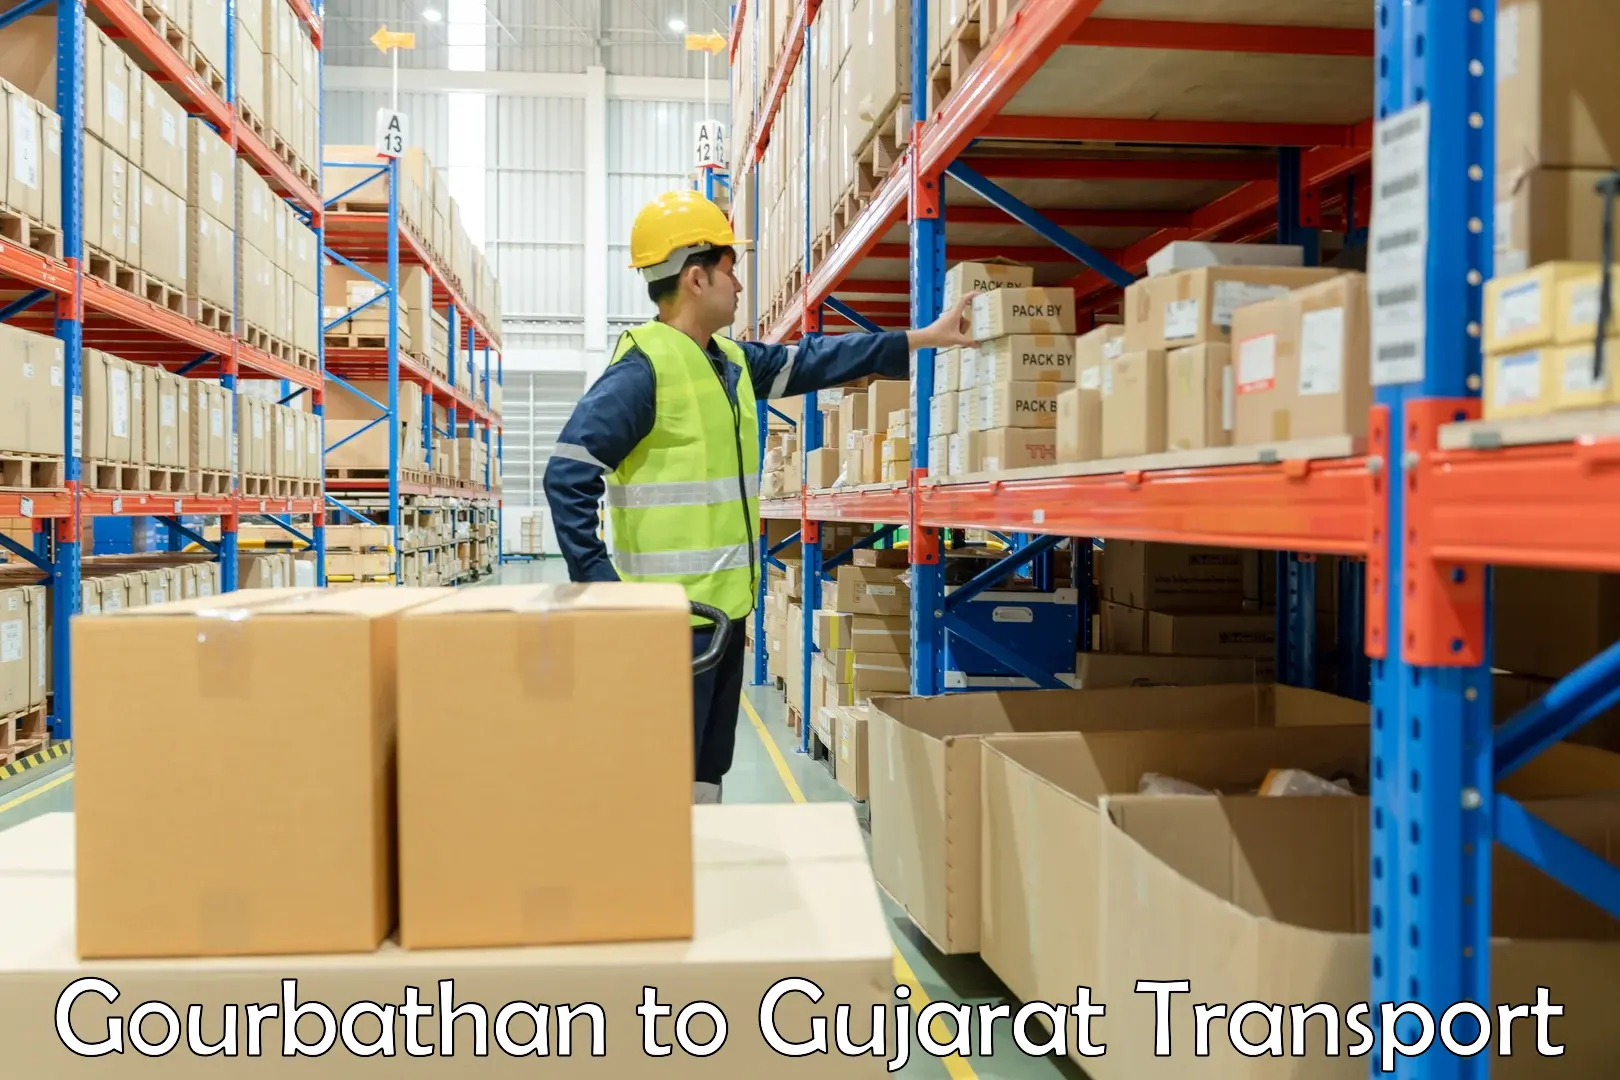 Furniture transport service Gourbathan to Ambaji